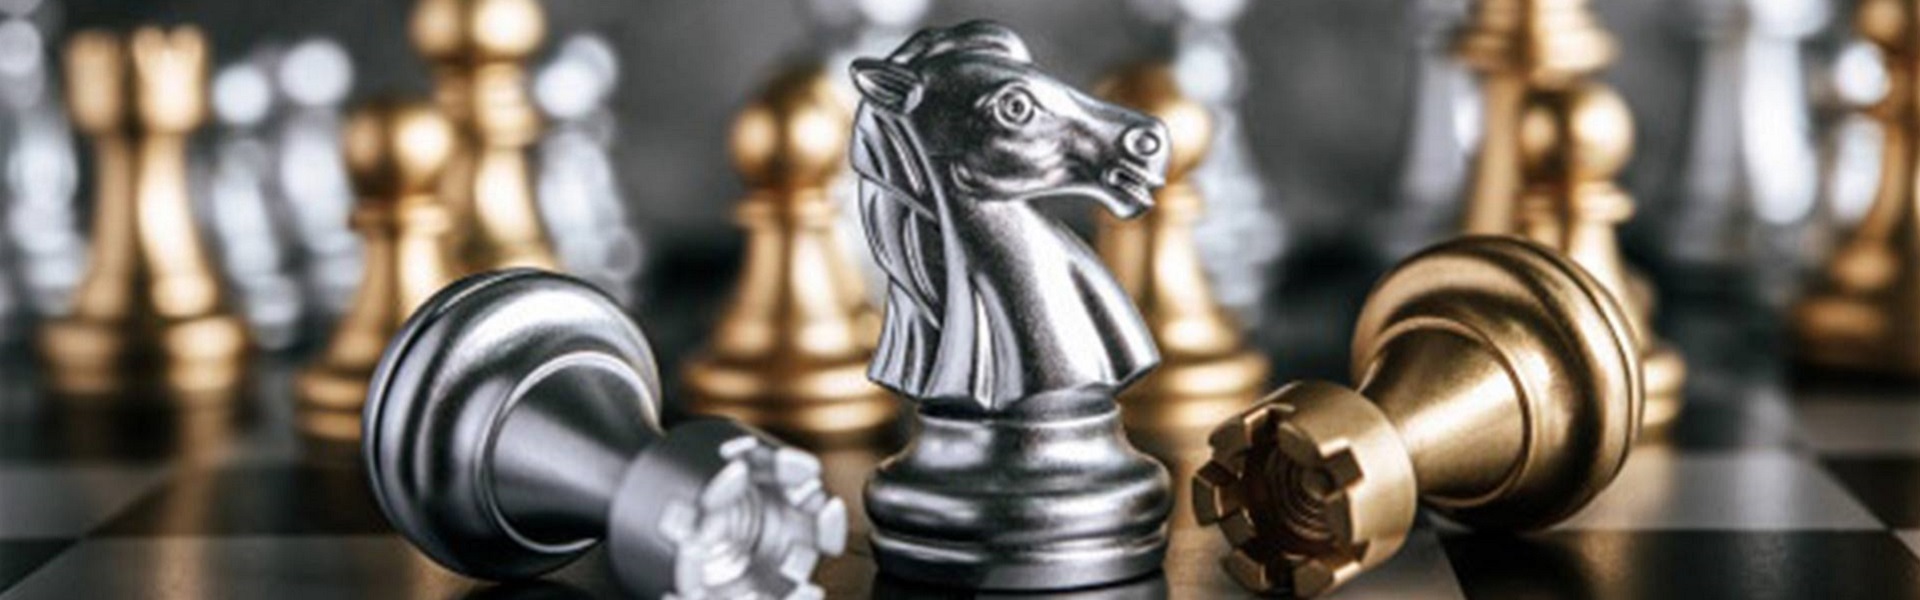 Stomatološka ordinacija Beograd | Chess lessons Dubai & New York